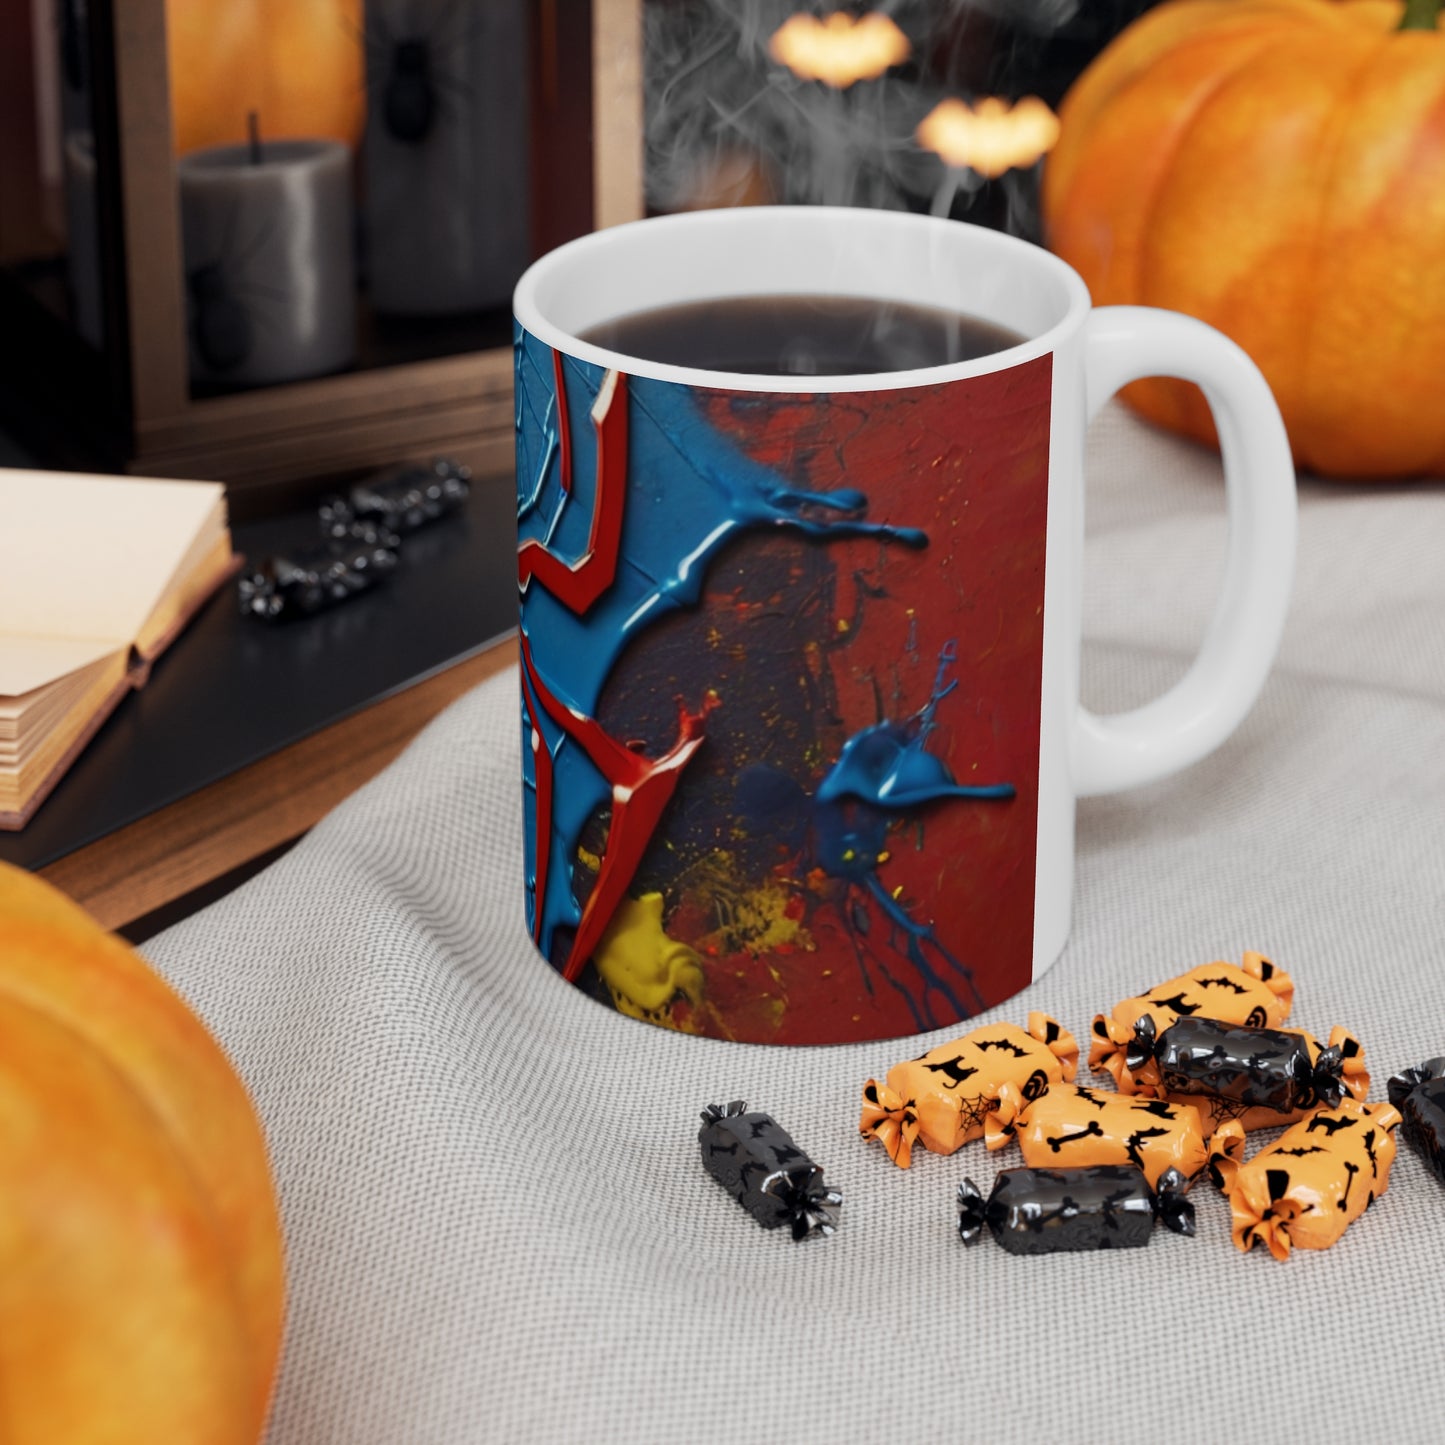 Colourful Painted Messy Spiderman Logo Mug - Ceramic Coffee Mug 11oz